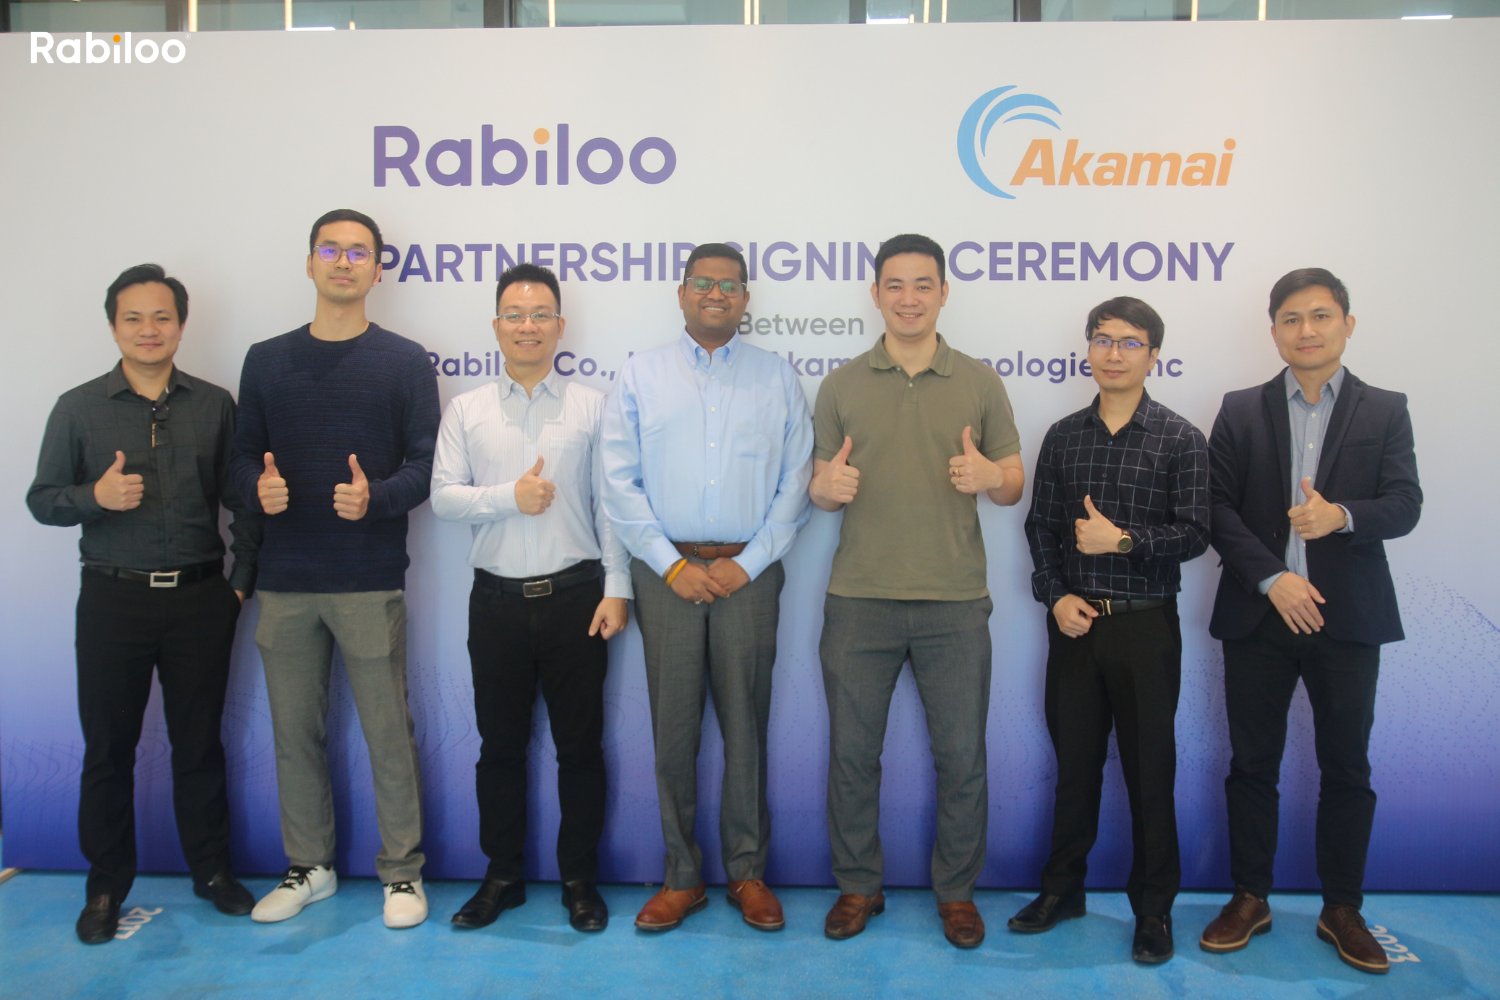 ハノイのRabiloo本社オフィスにおいて、RabilooとAkamai社のパートナーシップ締結式が行われました。